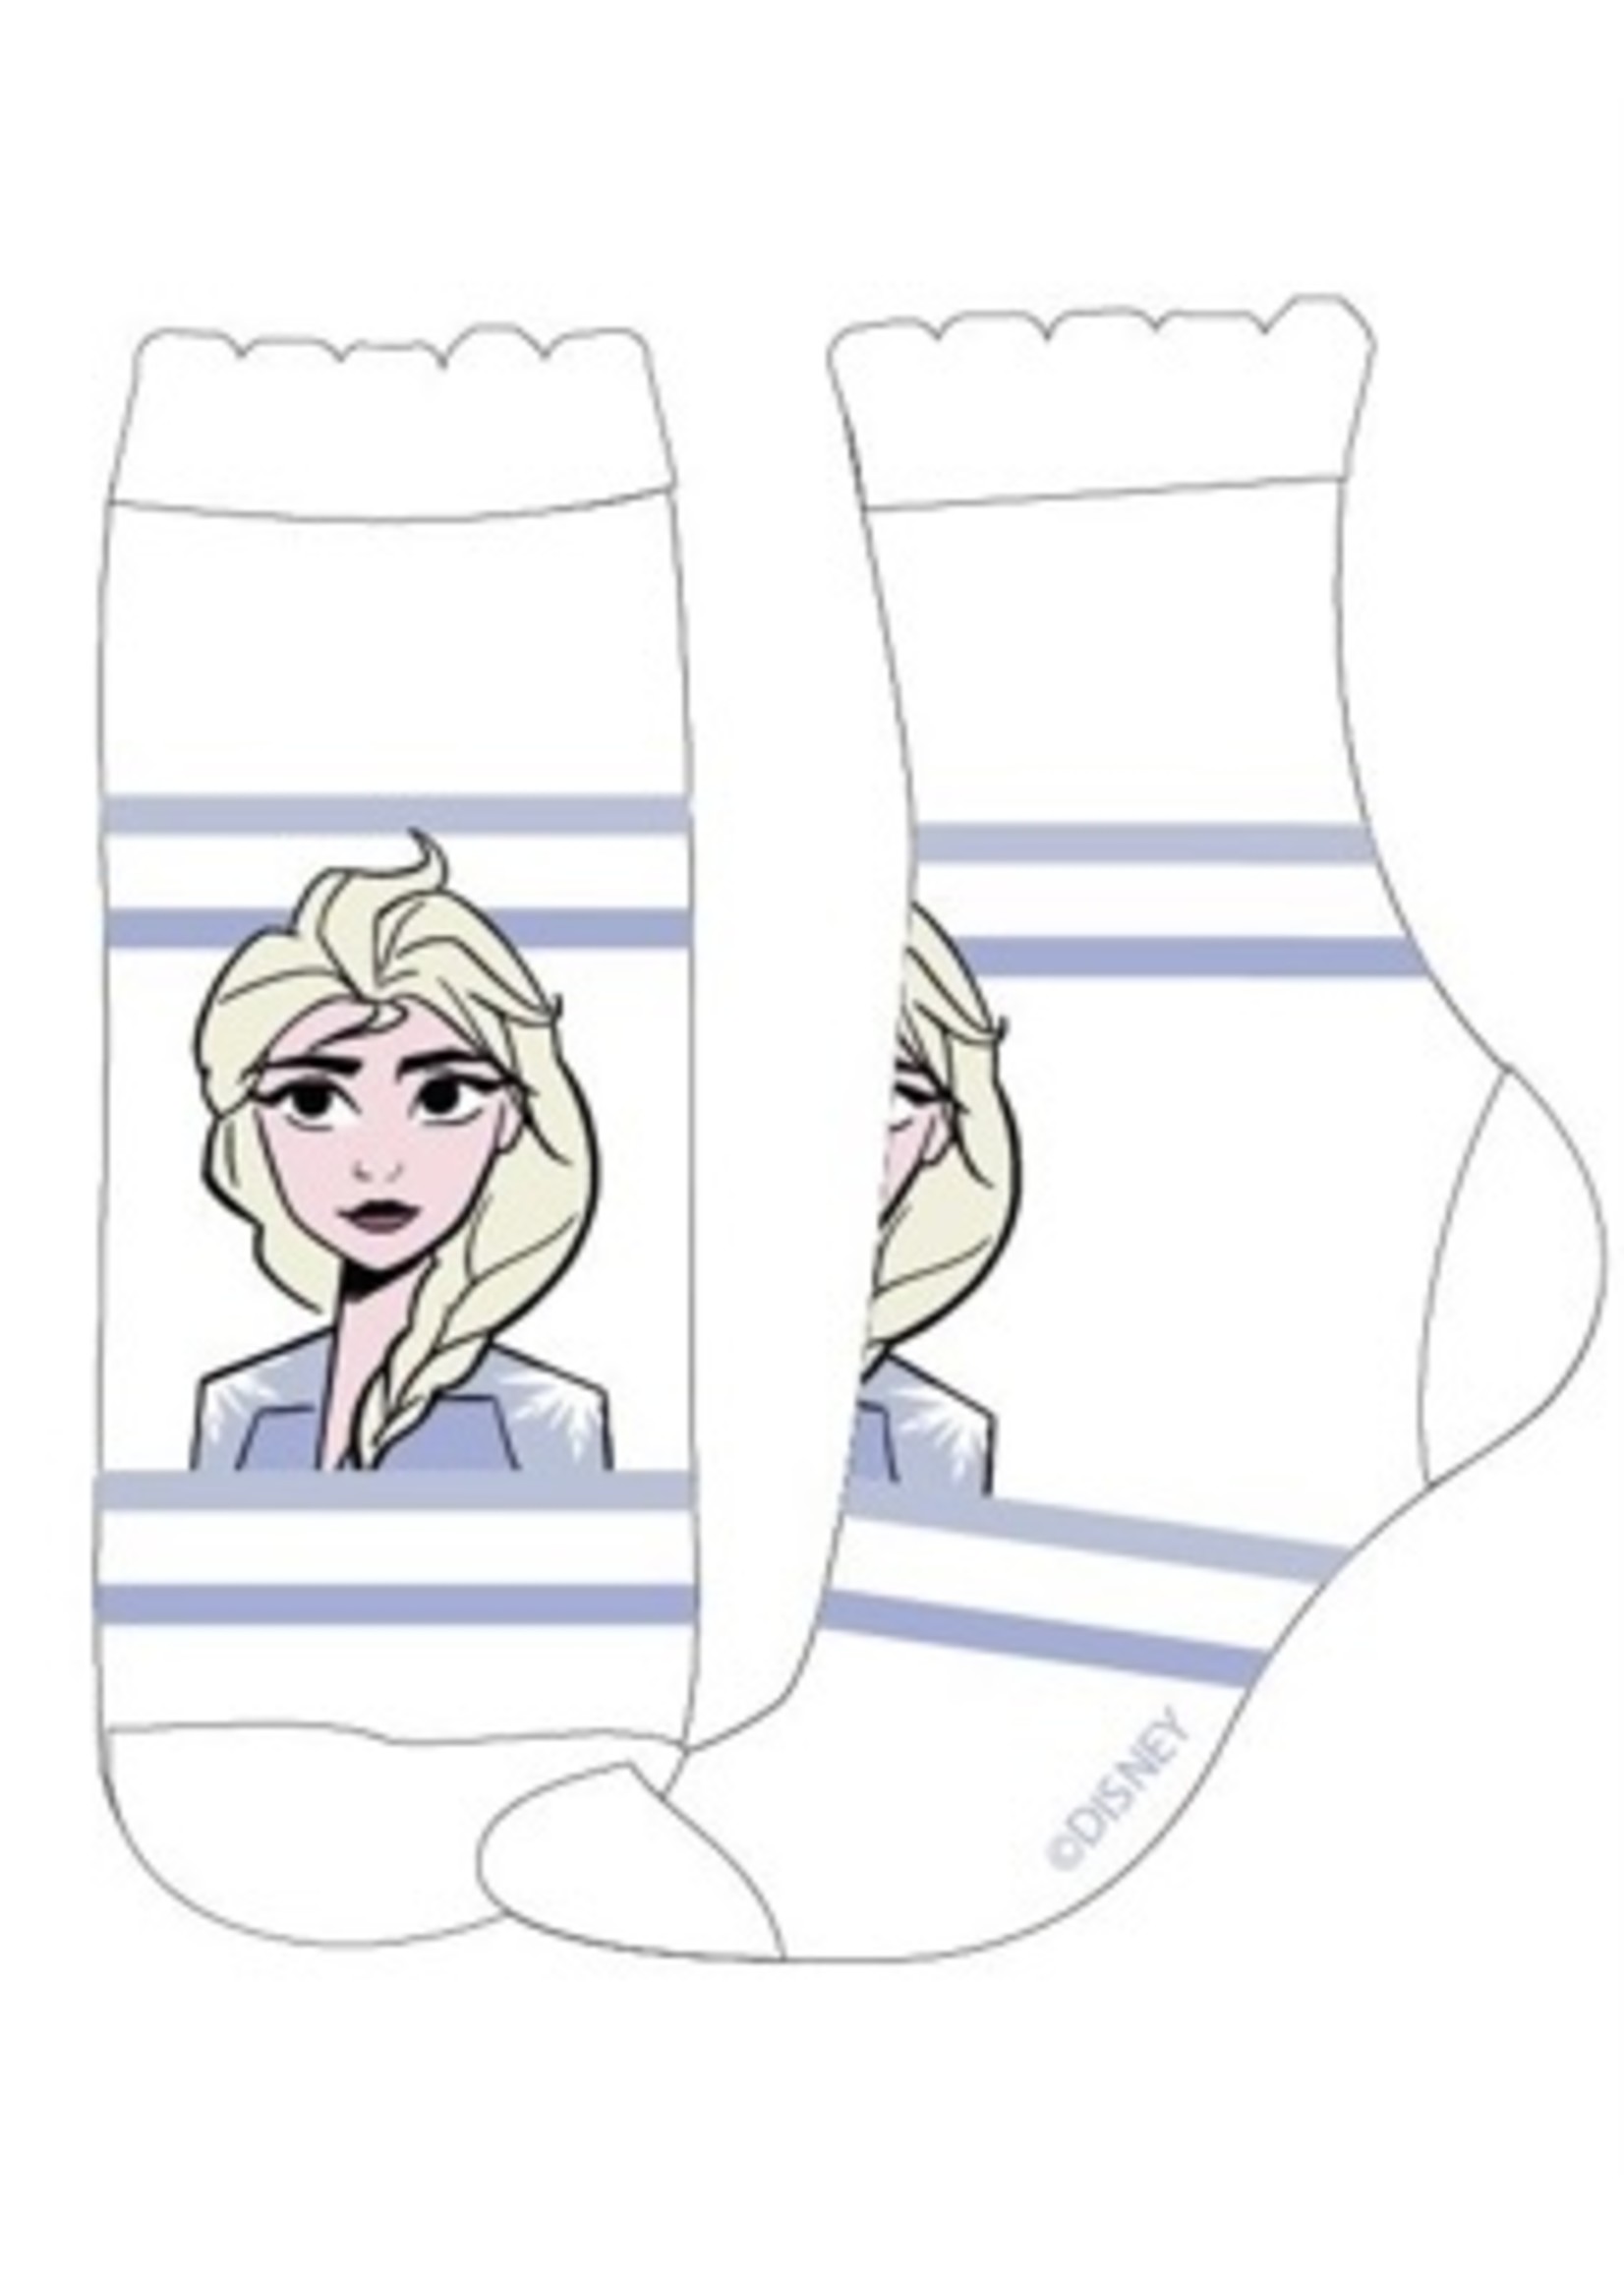 Disney Frozen socks from Disney white